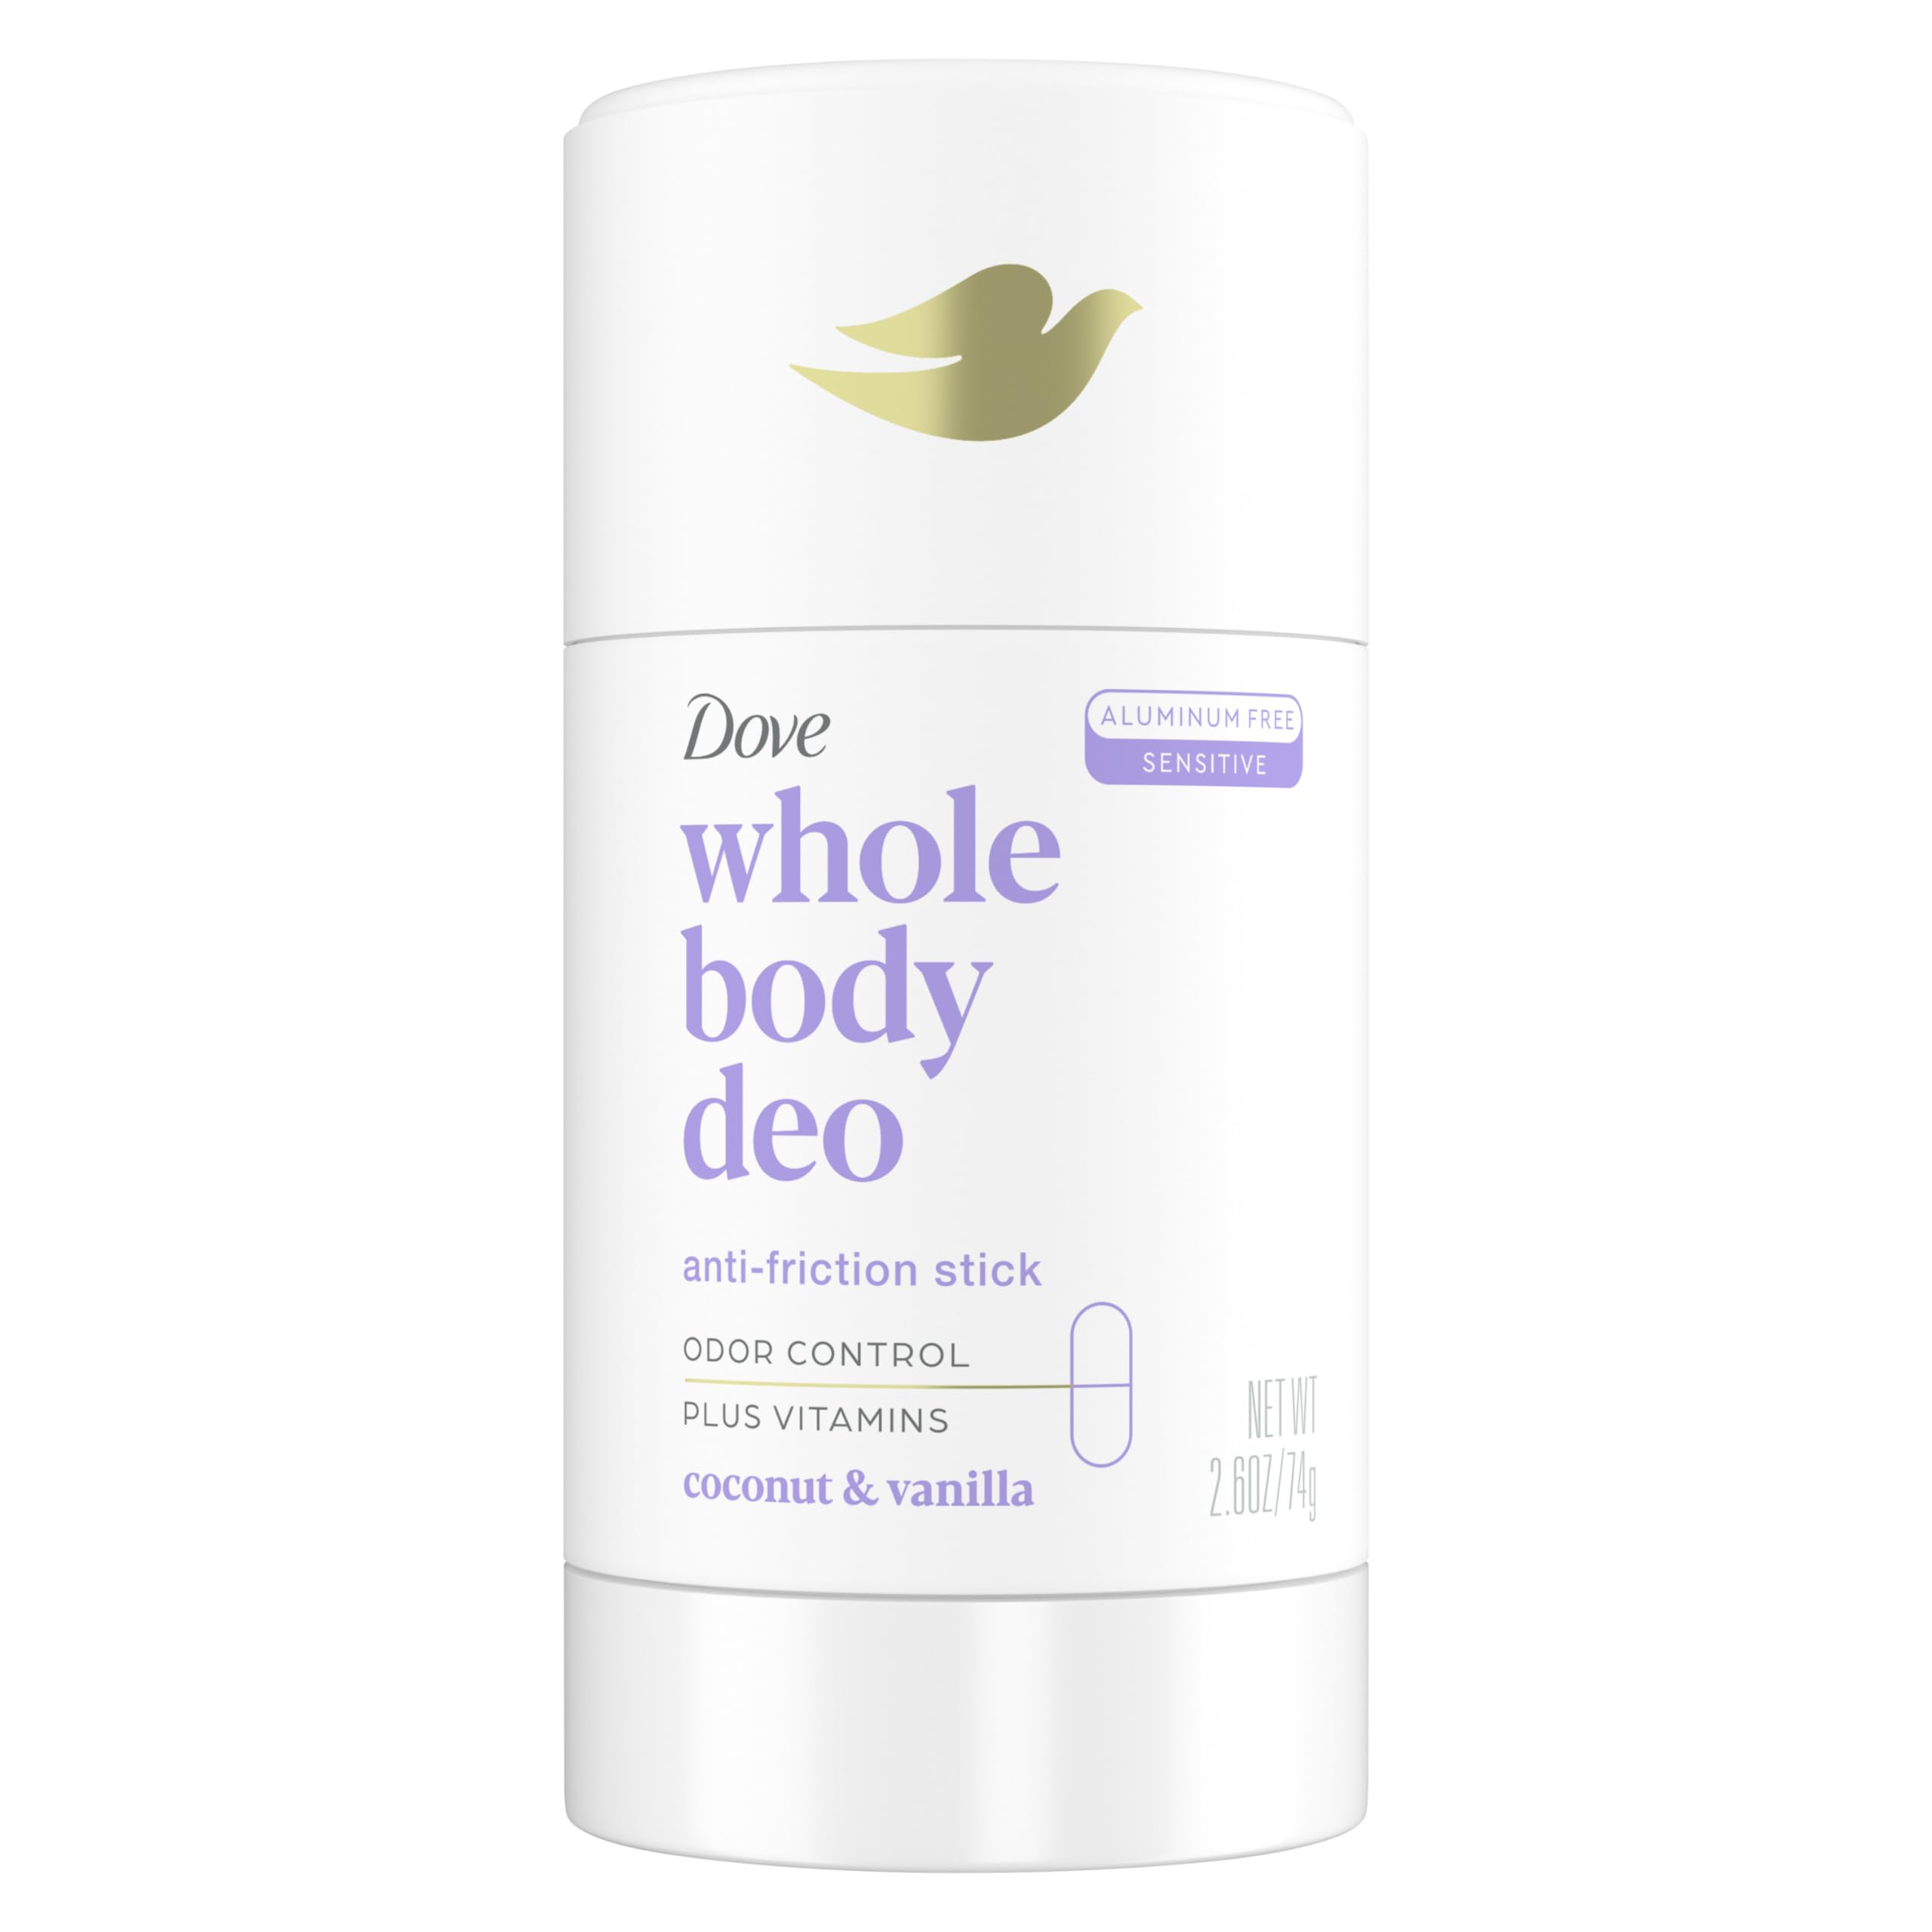 Dove Whole Body Deo Aluminum Free Deodorant Stick Coconut + Vanilla for Body Odor Control, 2.6 oz